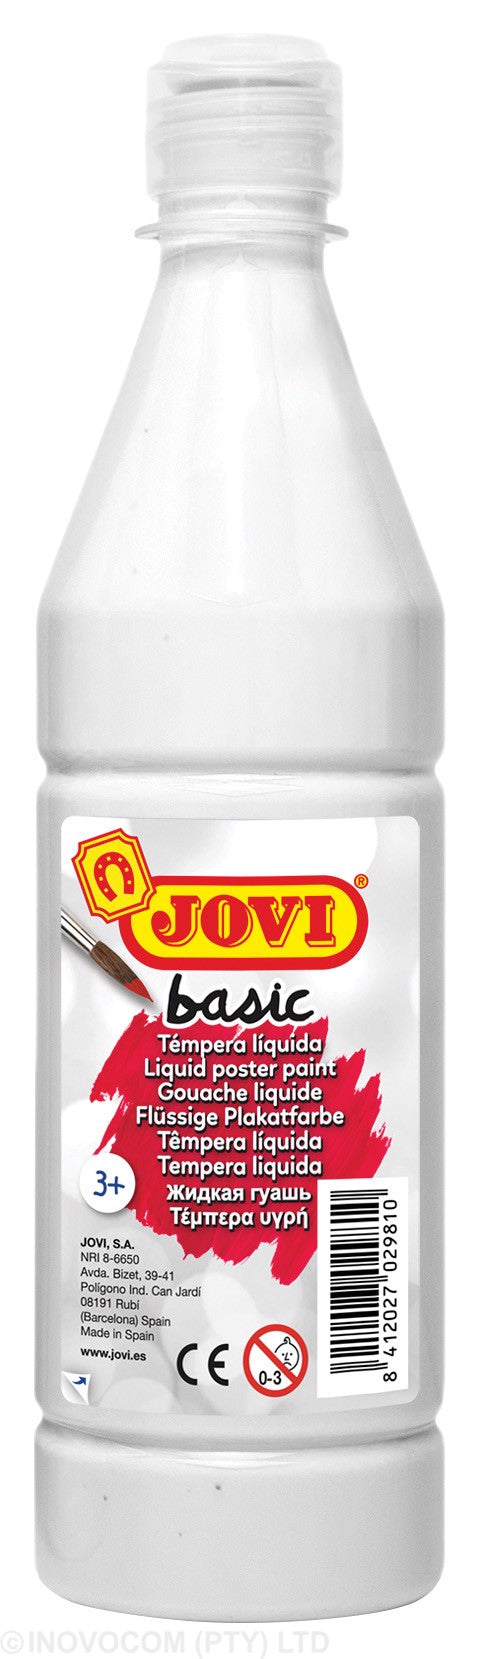 Jovi Basic Liquid Poster Paint Bottle 500ml White